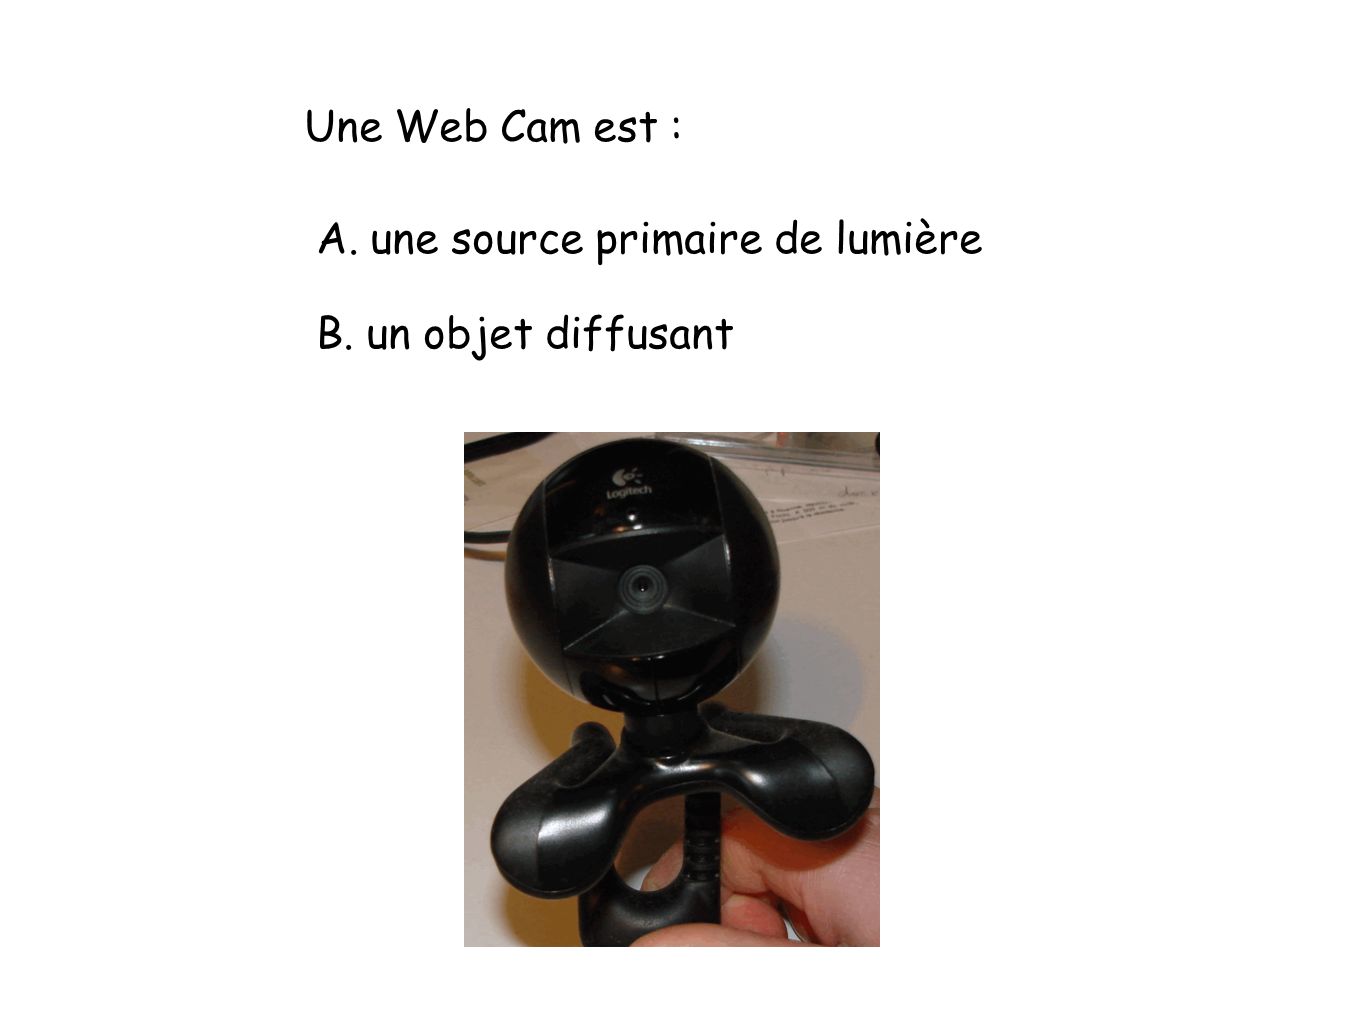 Une Web Cam est : A. une source primaire de lumière B. un objet diffusant